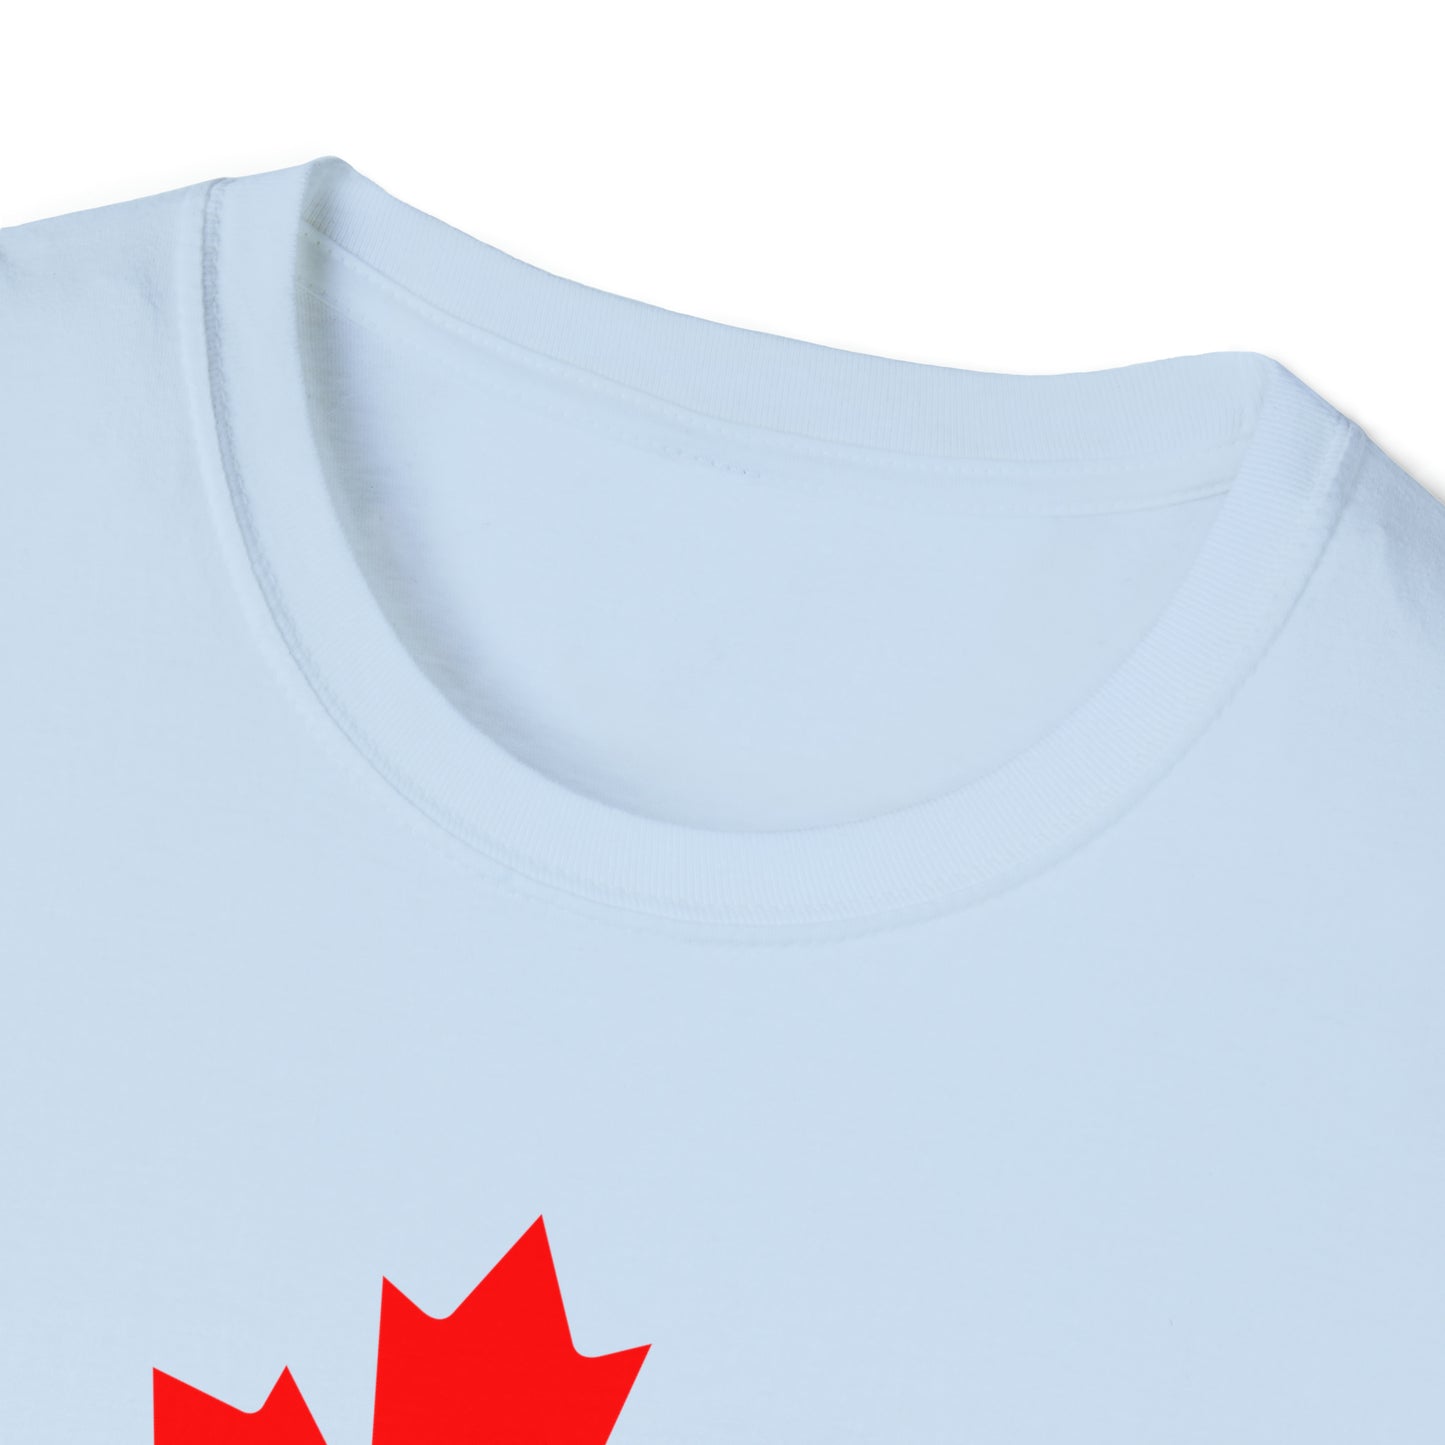 Canadian Maple Leaf, Unisex Softstyle T-Shirt